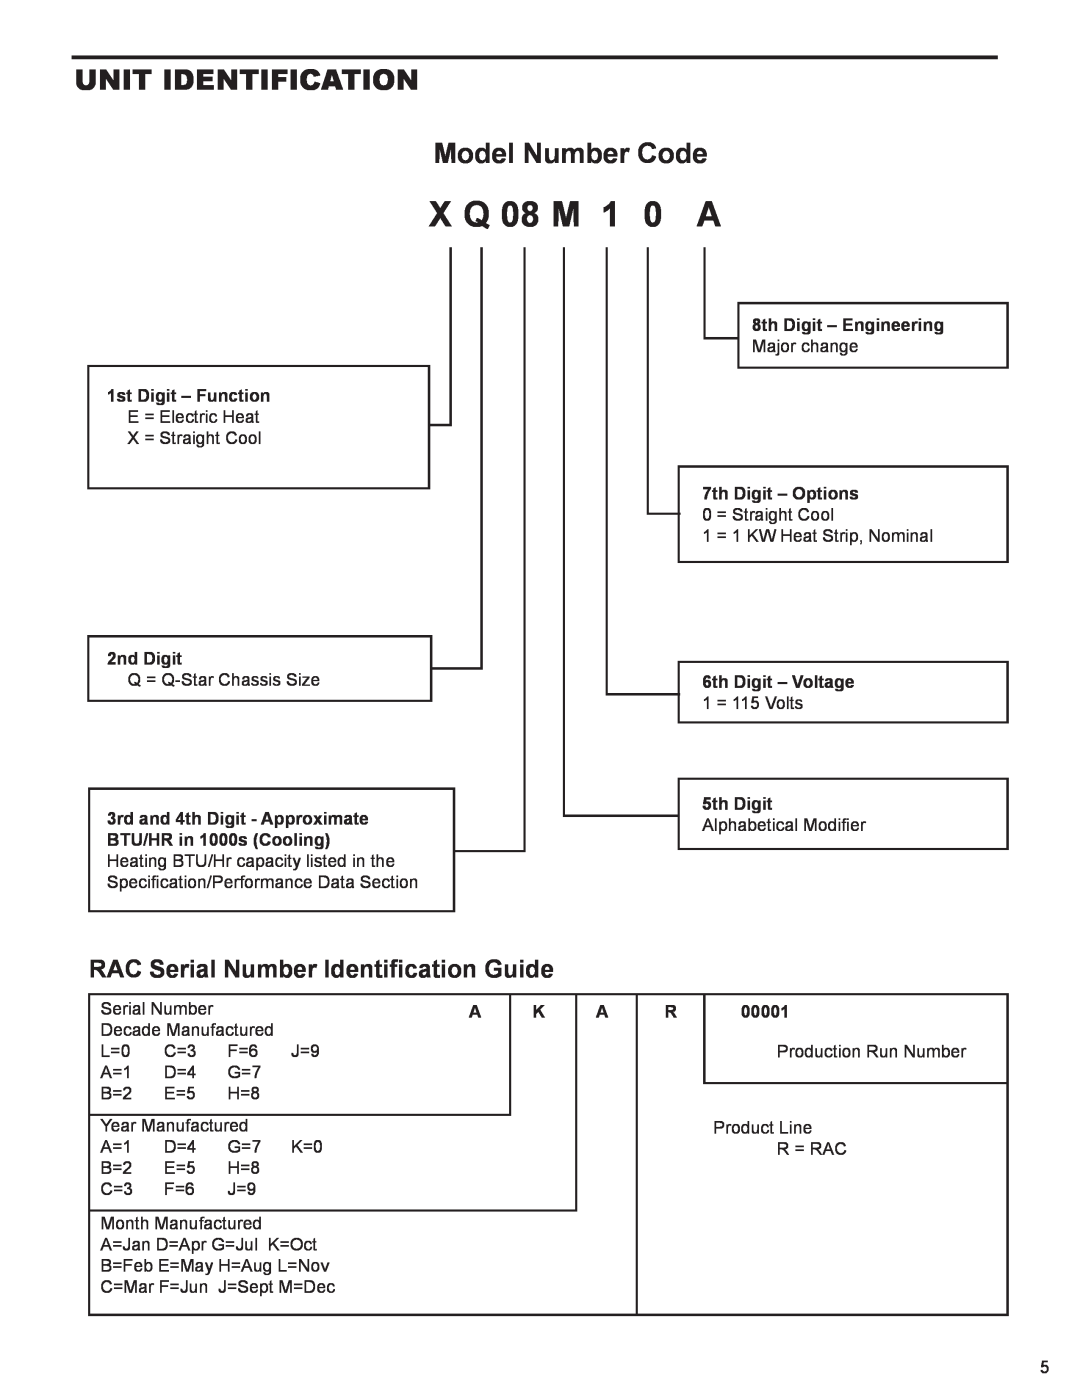 Friedrich R-410A X Q 08 M 1 0 A, Unit Identification Model Number Code, RAC Serial Number Identification Guide, 2nd Digit 